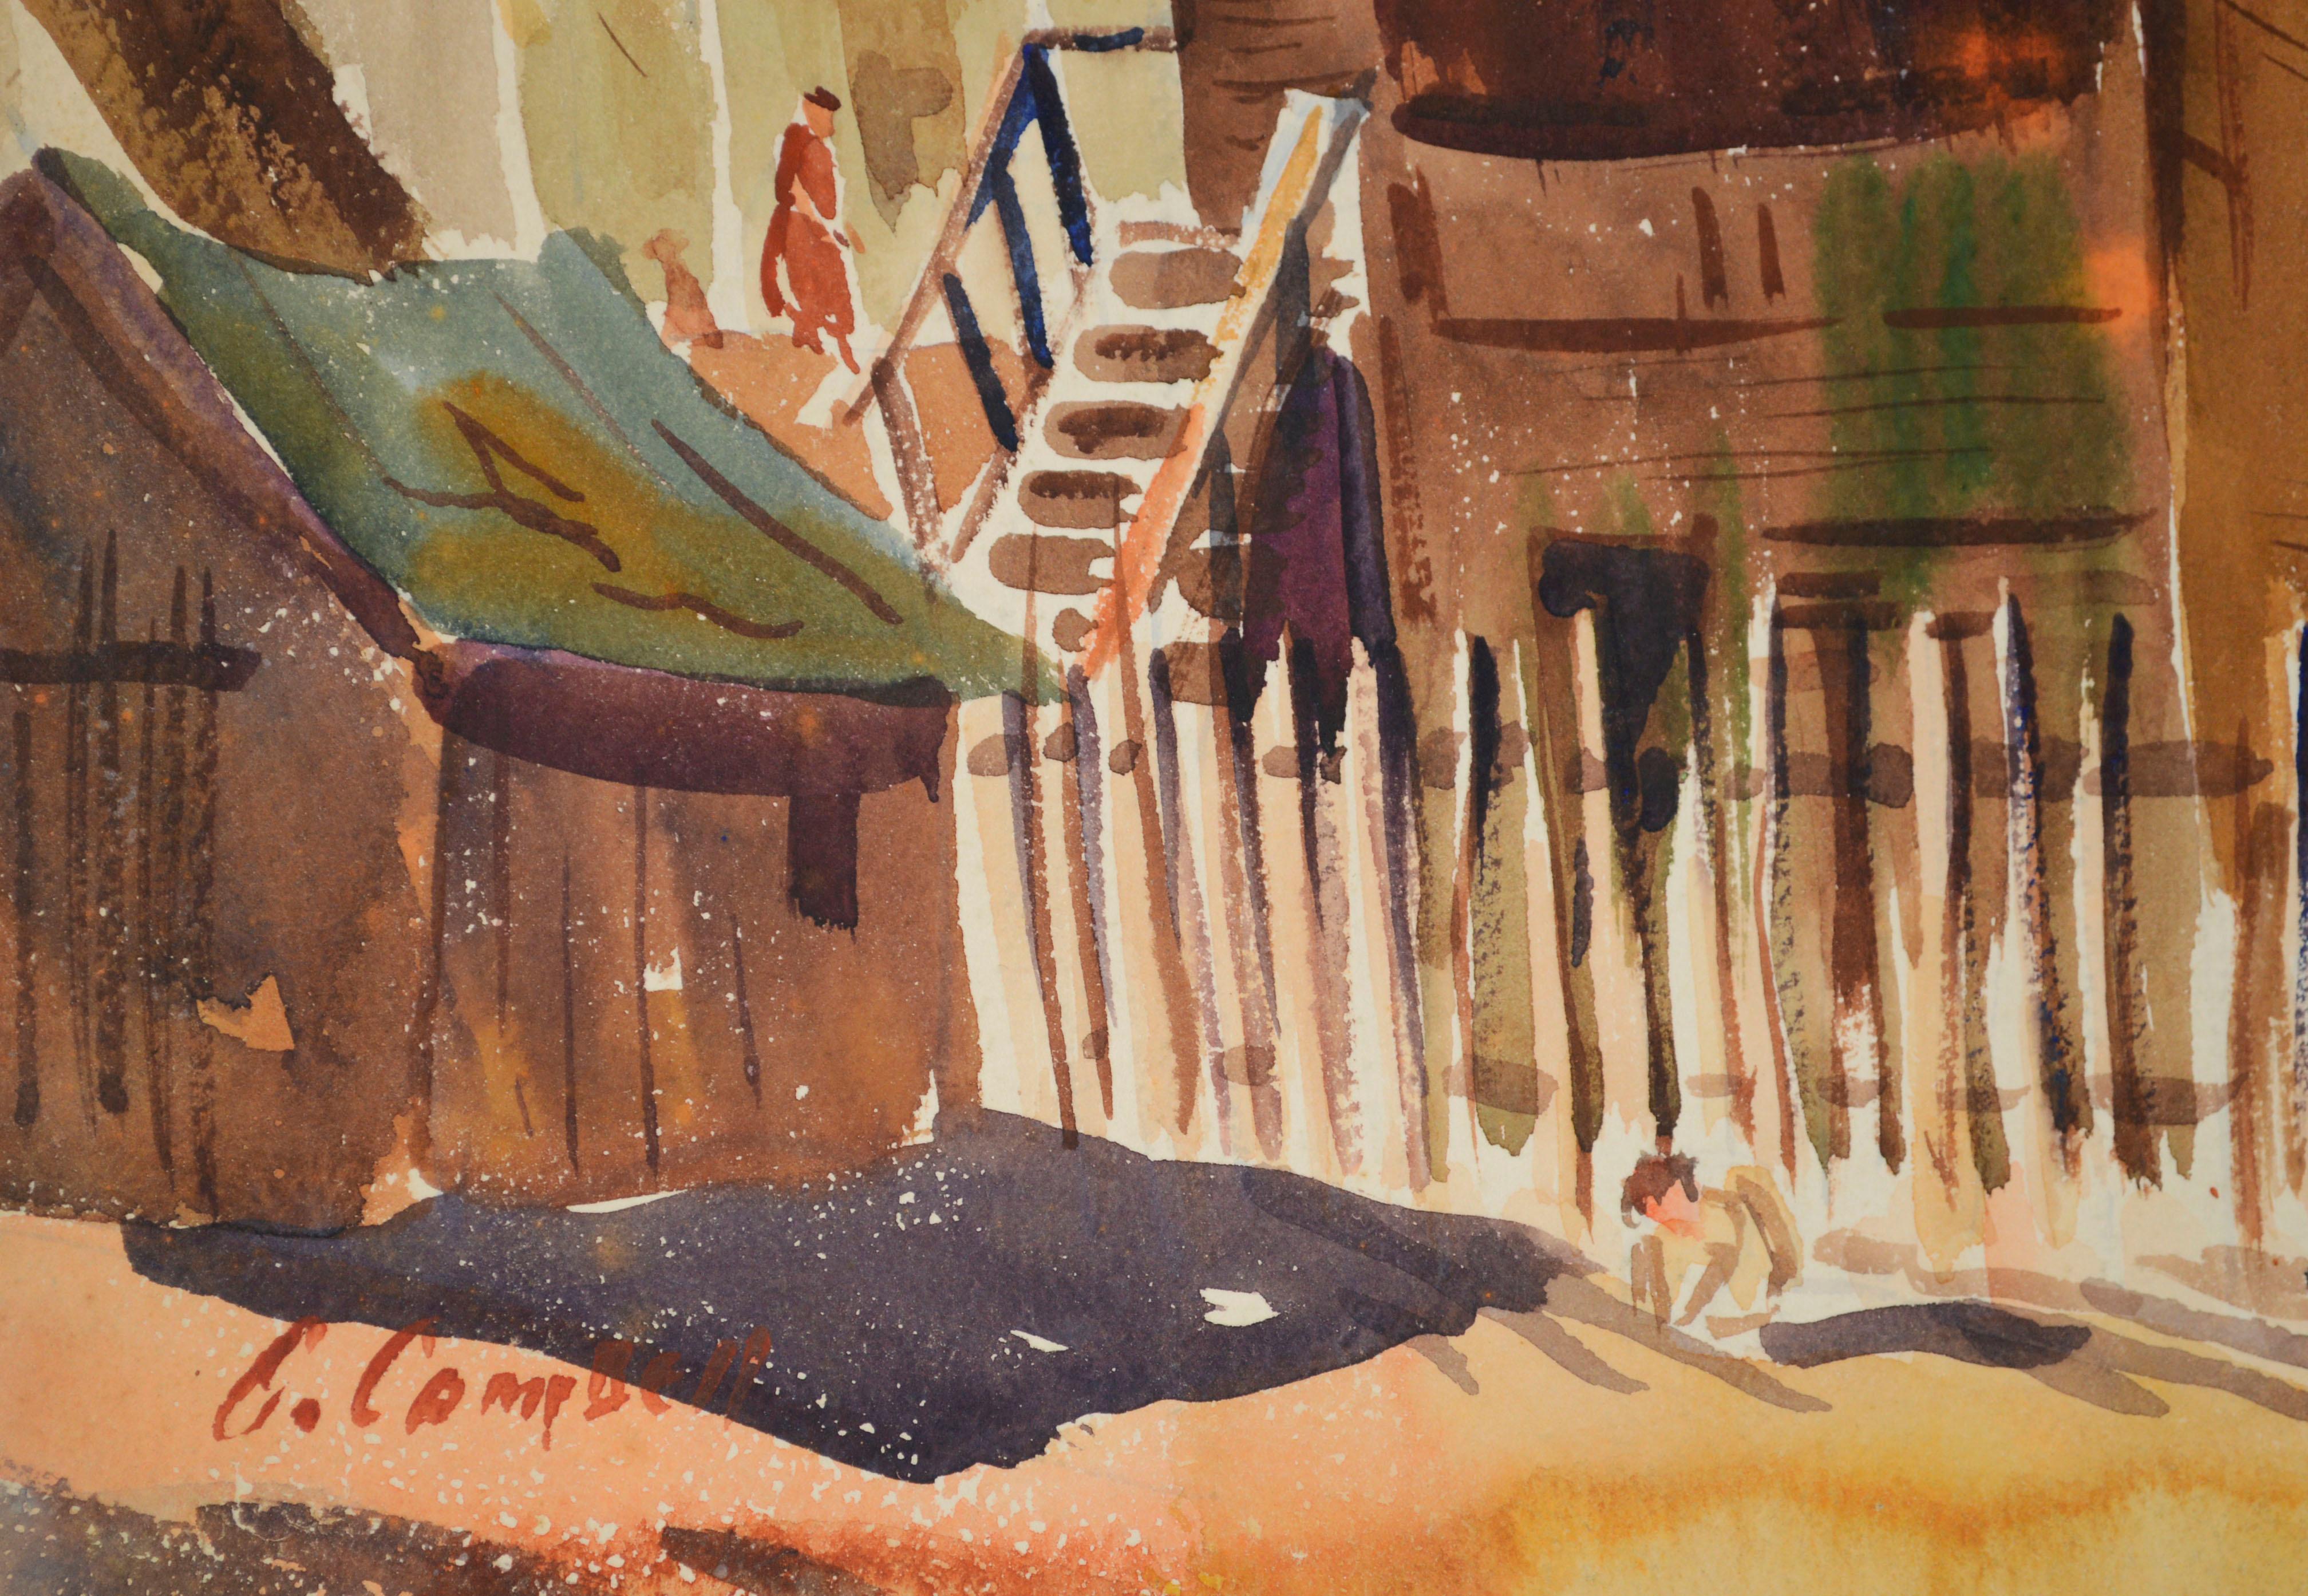 Finding My Way Home, Pacific Grove, Aquarelllandschaft aus der Mitte des Jahrhunderts  (Amerikanischer Impressionismus), Painting, von Unknown